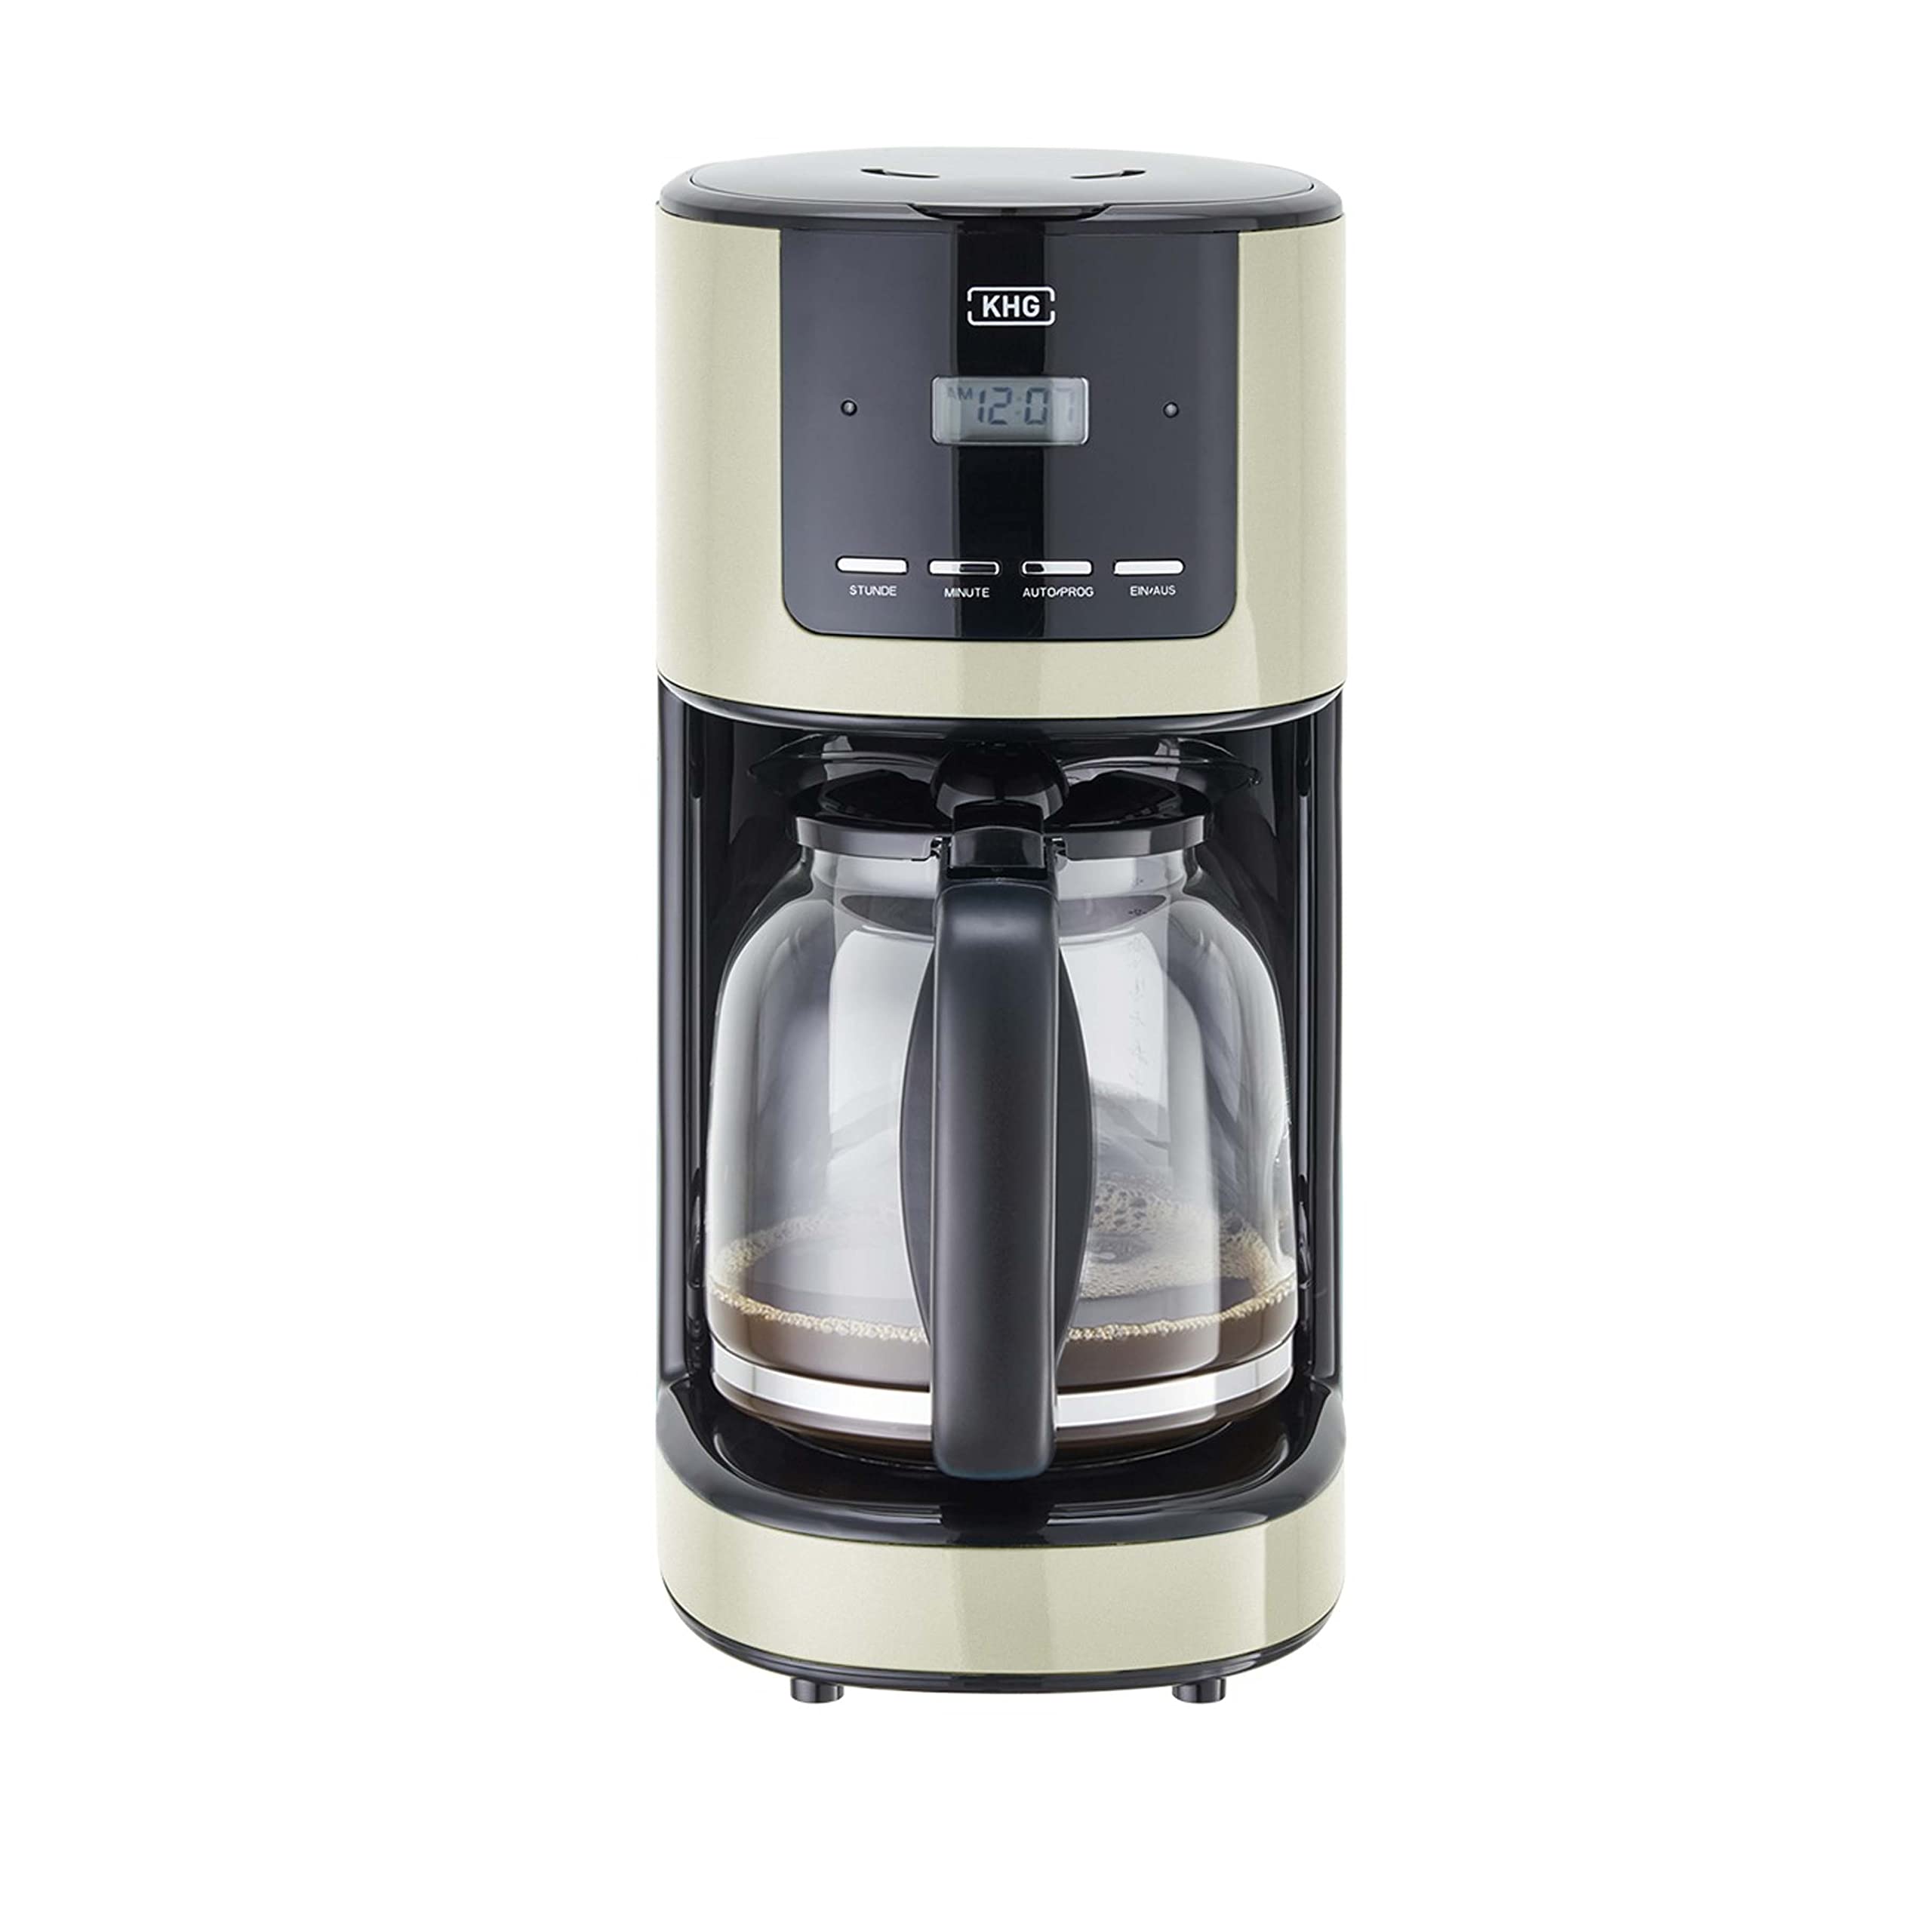 KHG Kaffeemaschine KA-184 (C) Creme, 12 Tassen, 1,5 L, 900W, Abschaltautomatik, Permanentfilter, Glaskanne, Timer-Funktion, LCD-Display mit Uhr, Tropfstopp, spülmaschinengeeignet